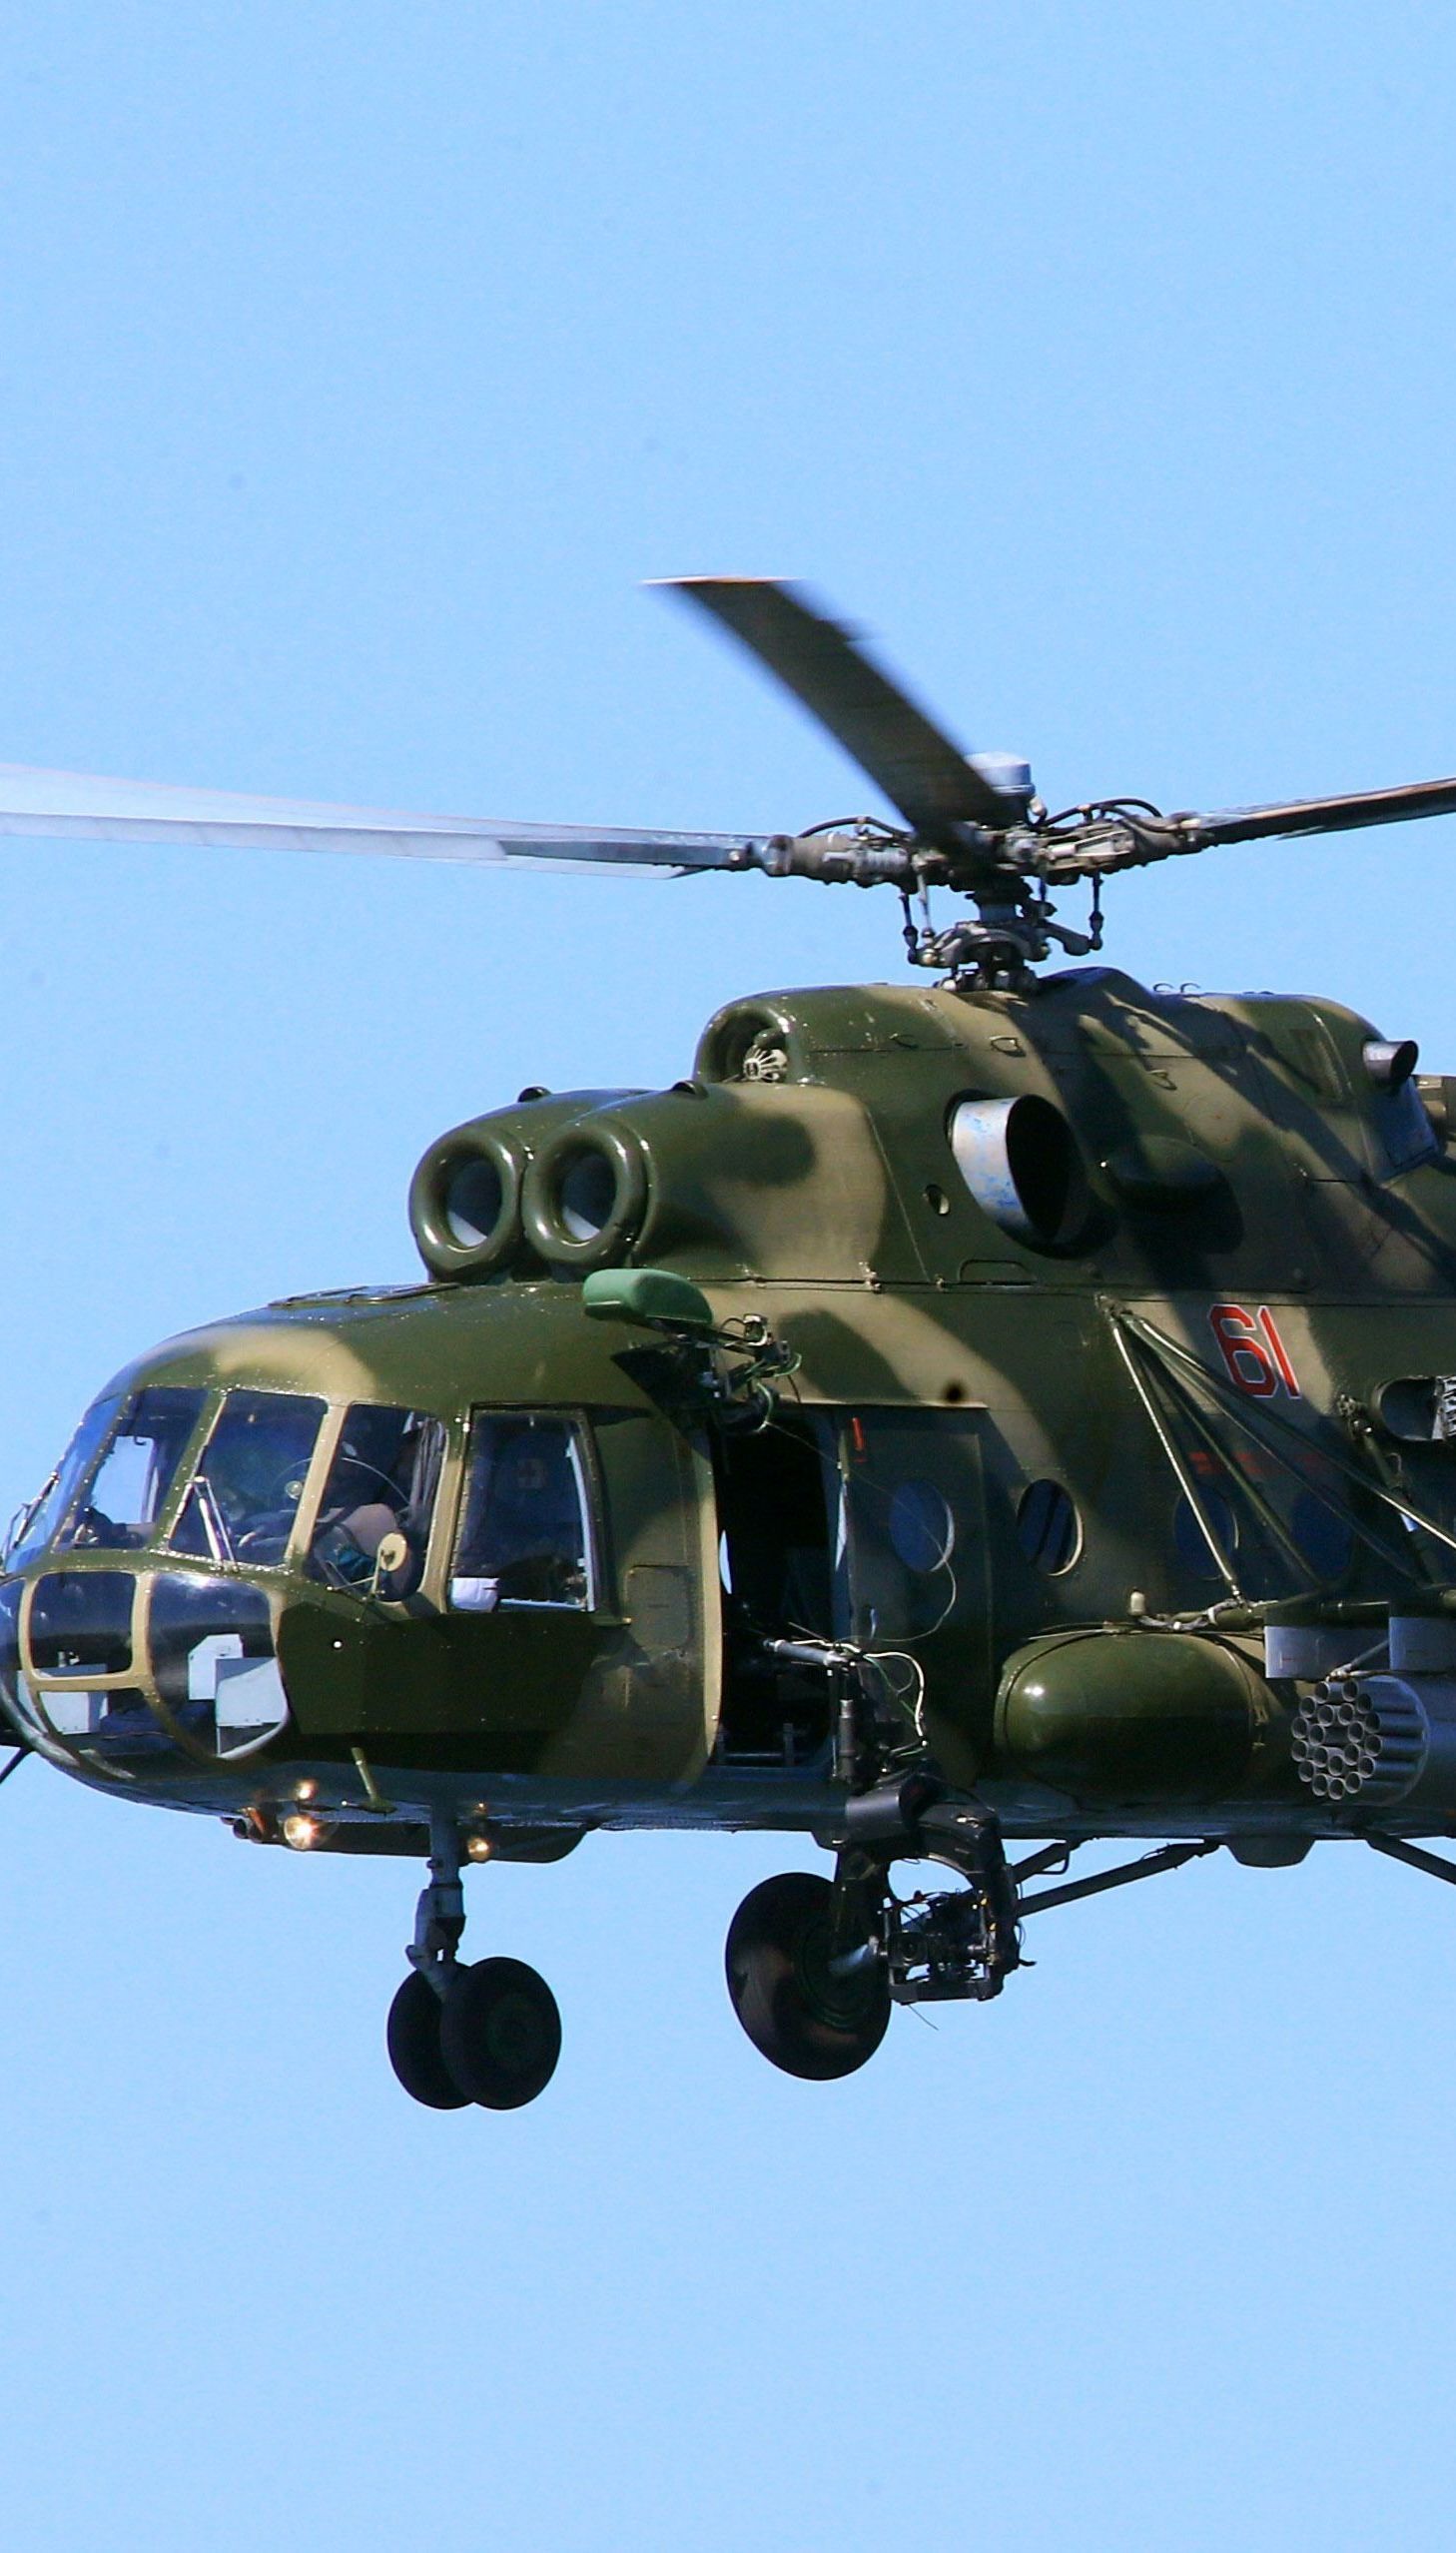 Вертоліт ліг на бік: в РФ анаслідок аварії Мі-8 постраждало троє осіб